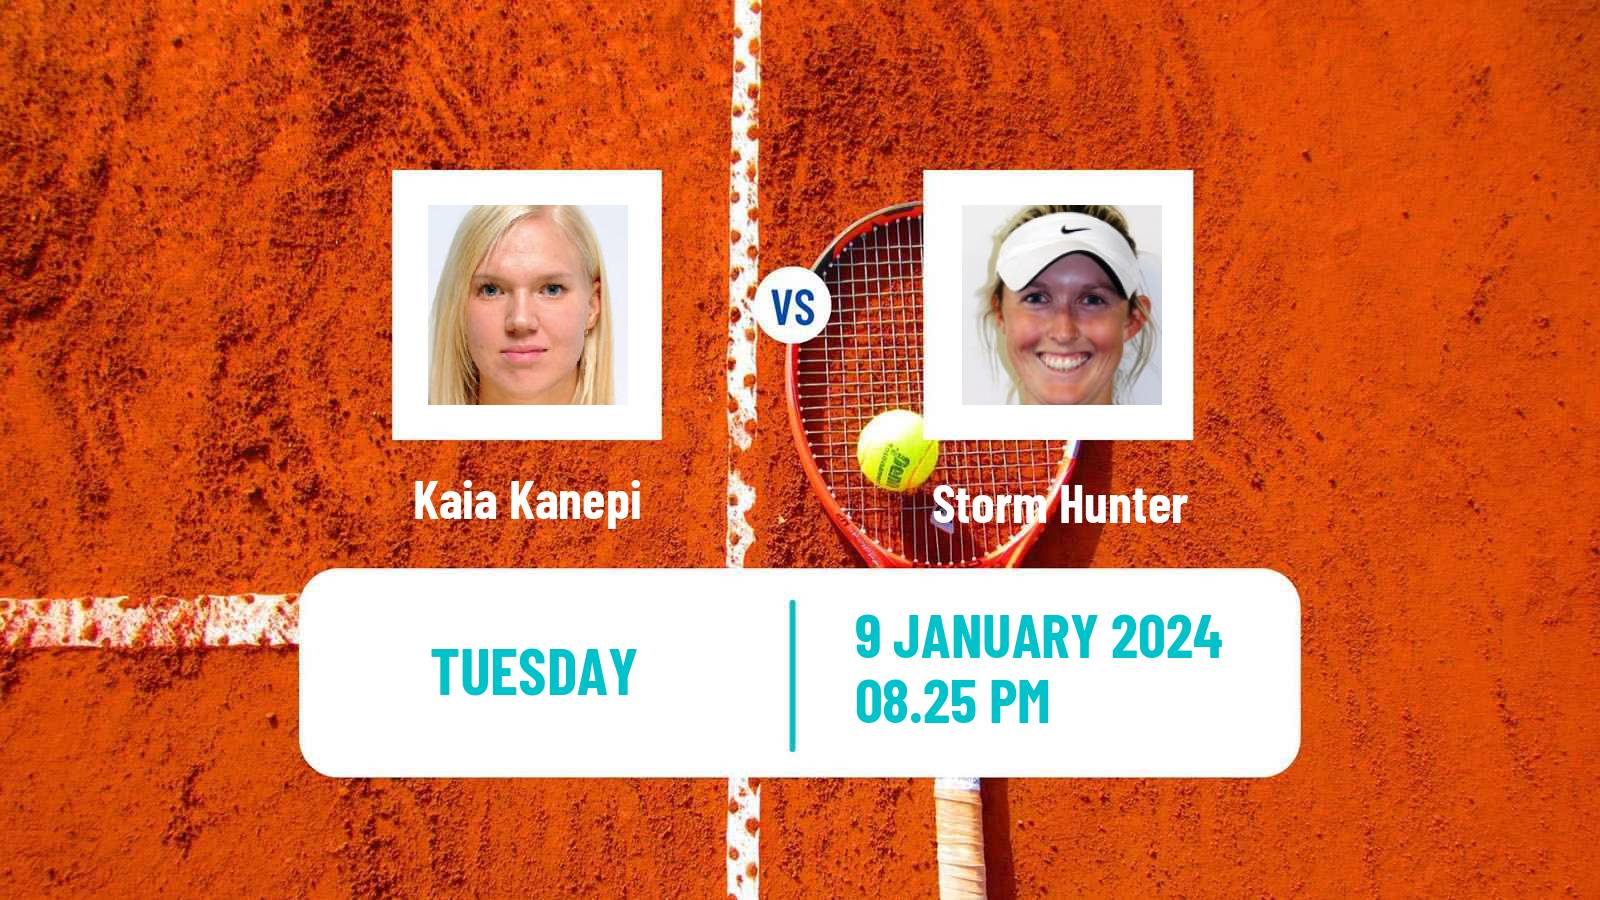 Tennis WTA Australian Open Kaia Kanepi - Storm Hunter